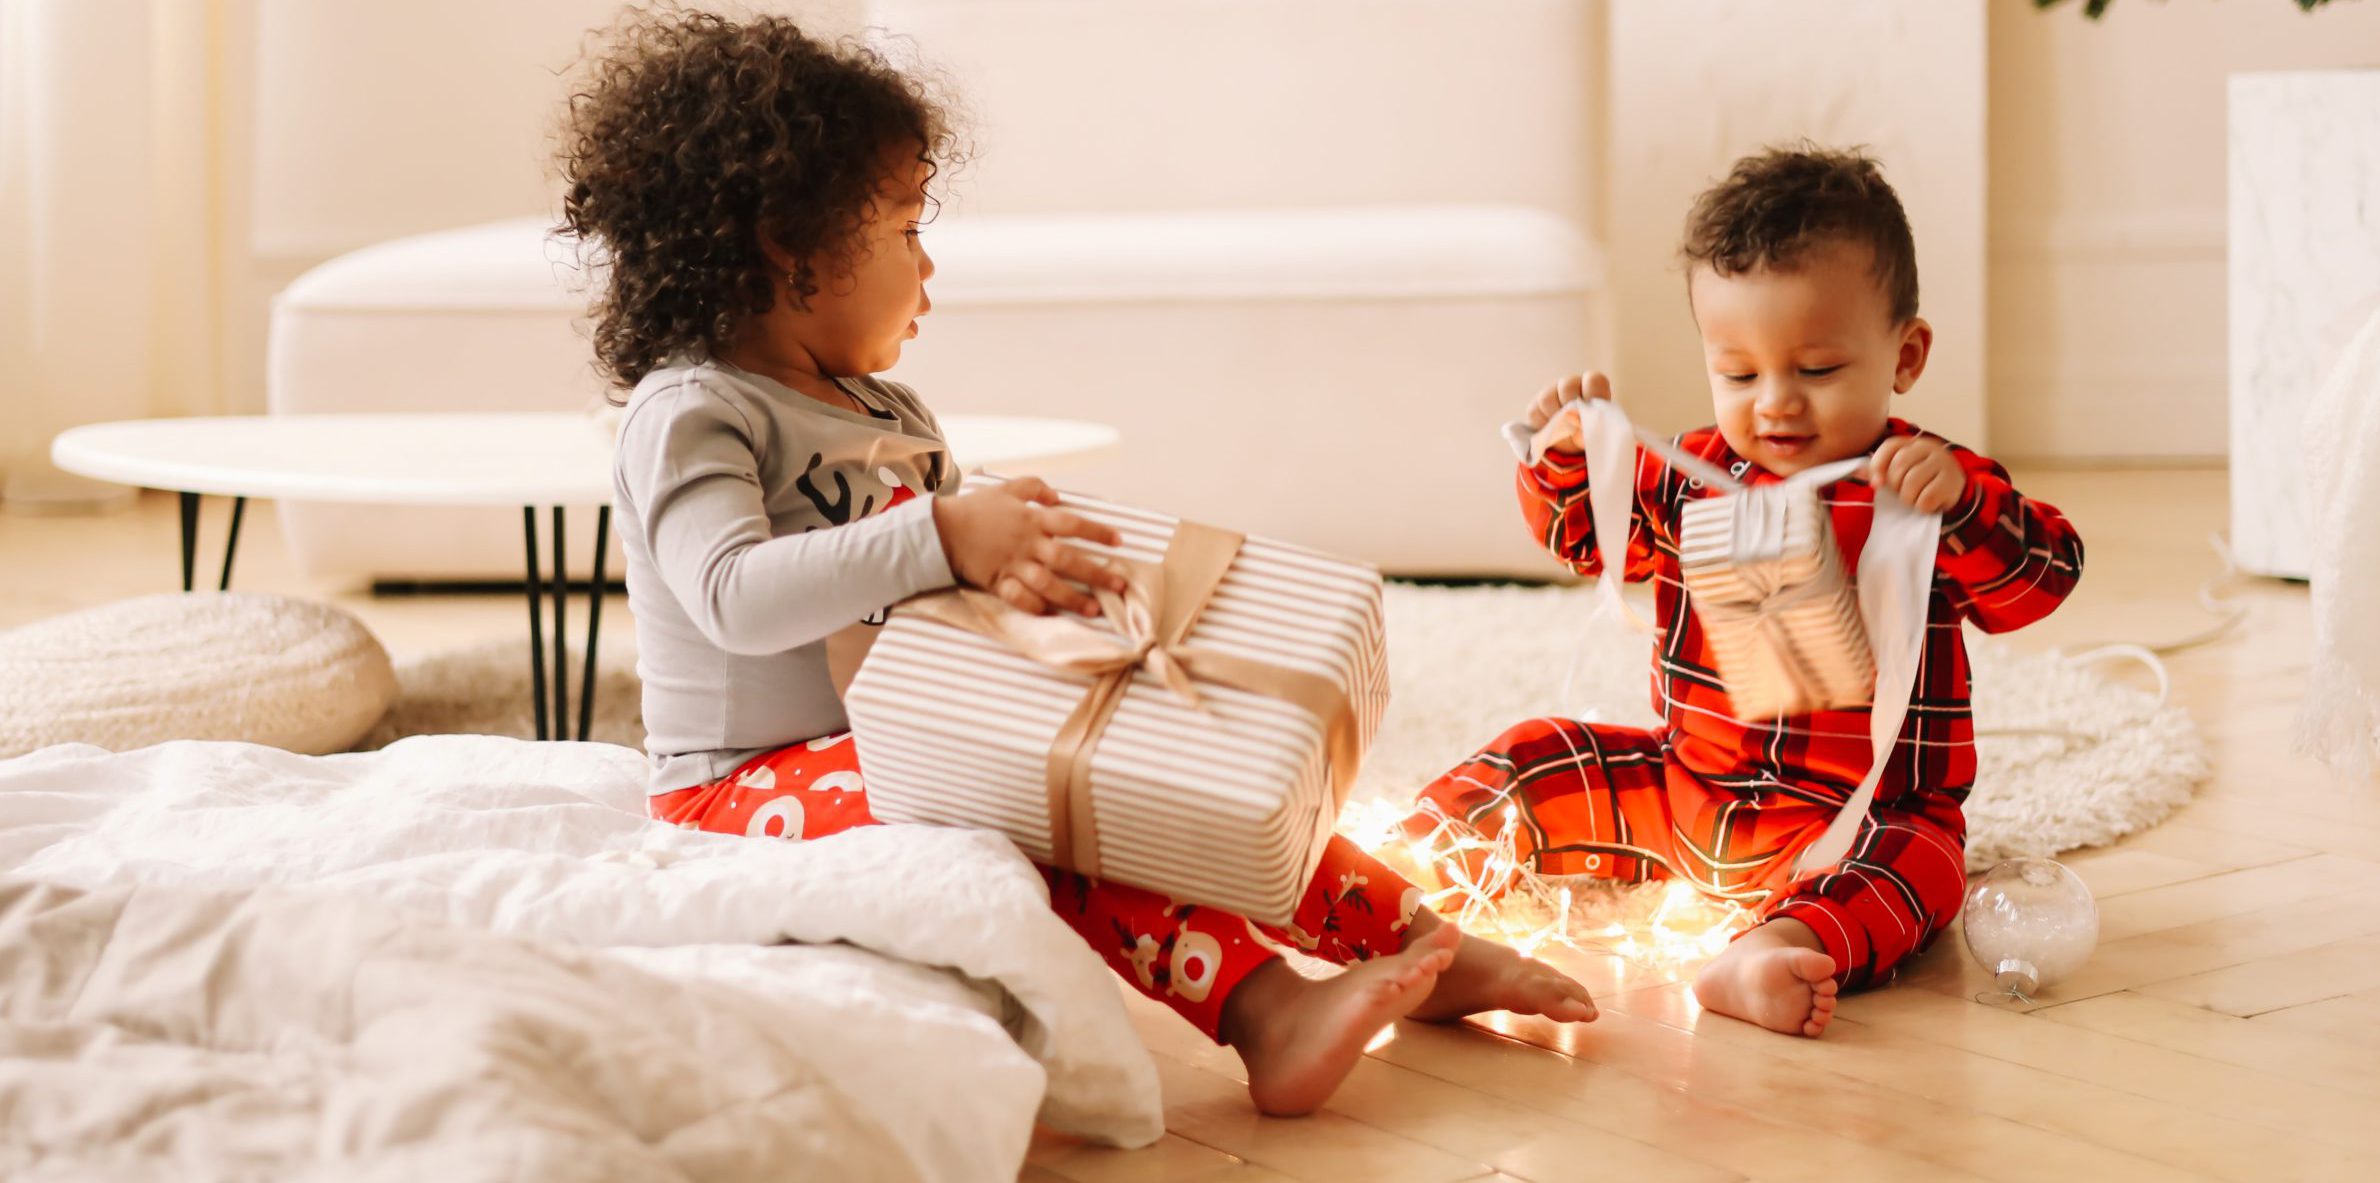 children wearing Christmas pajamas opening gifts